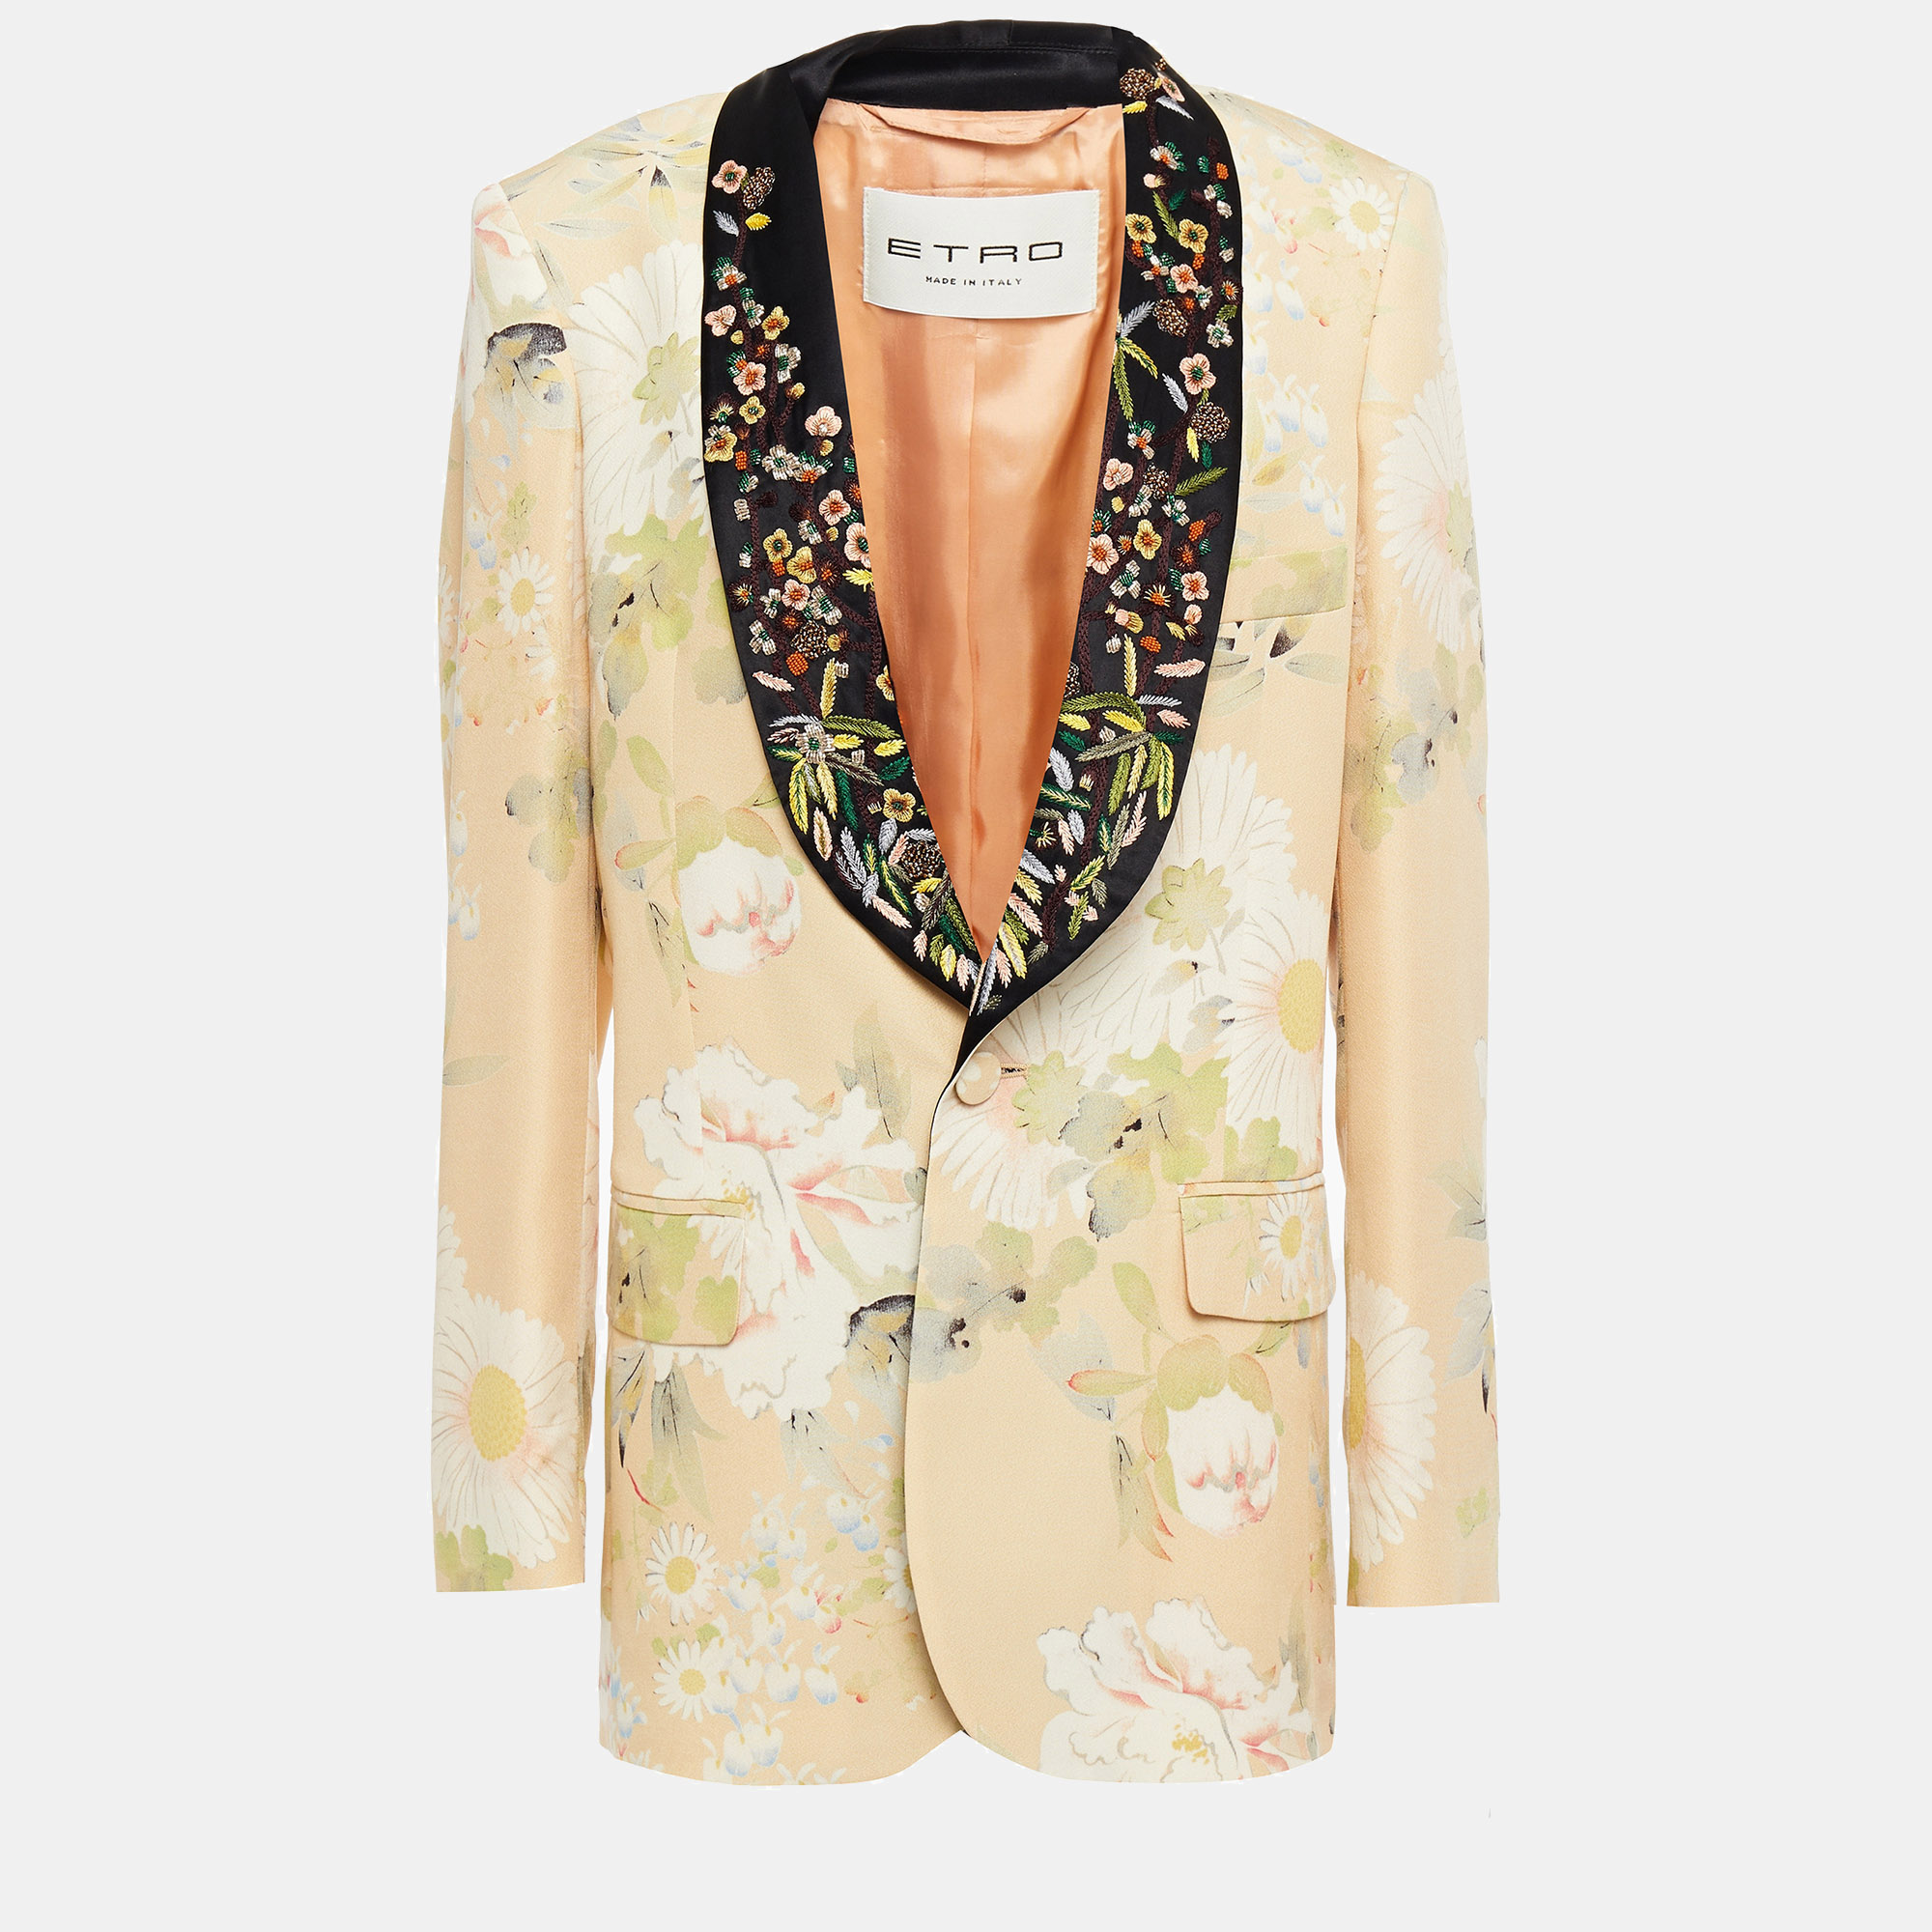 Etro beige floral print silk embroidered blazer m (it 44)